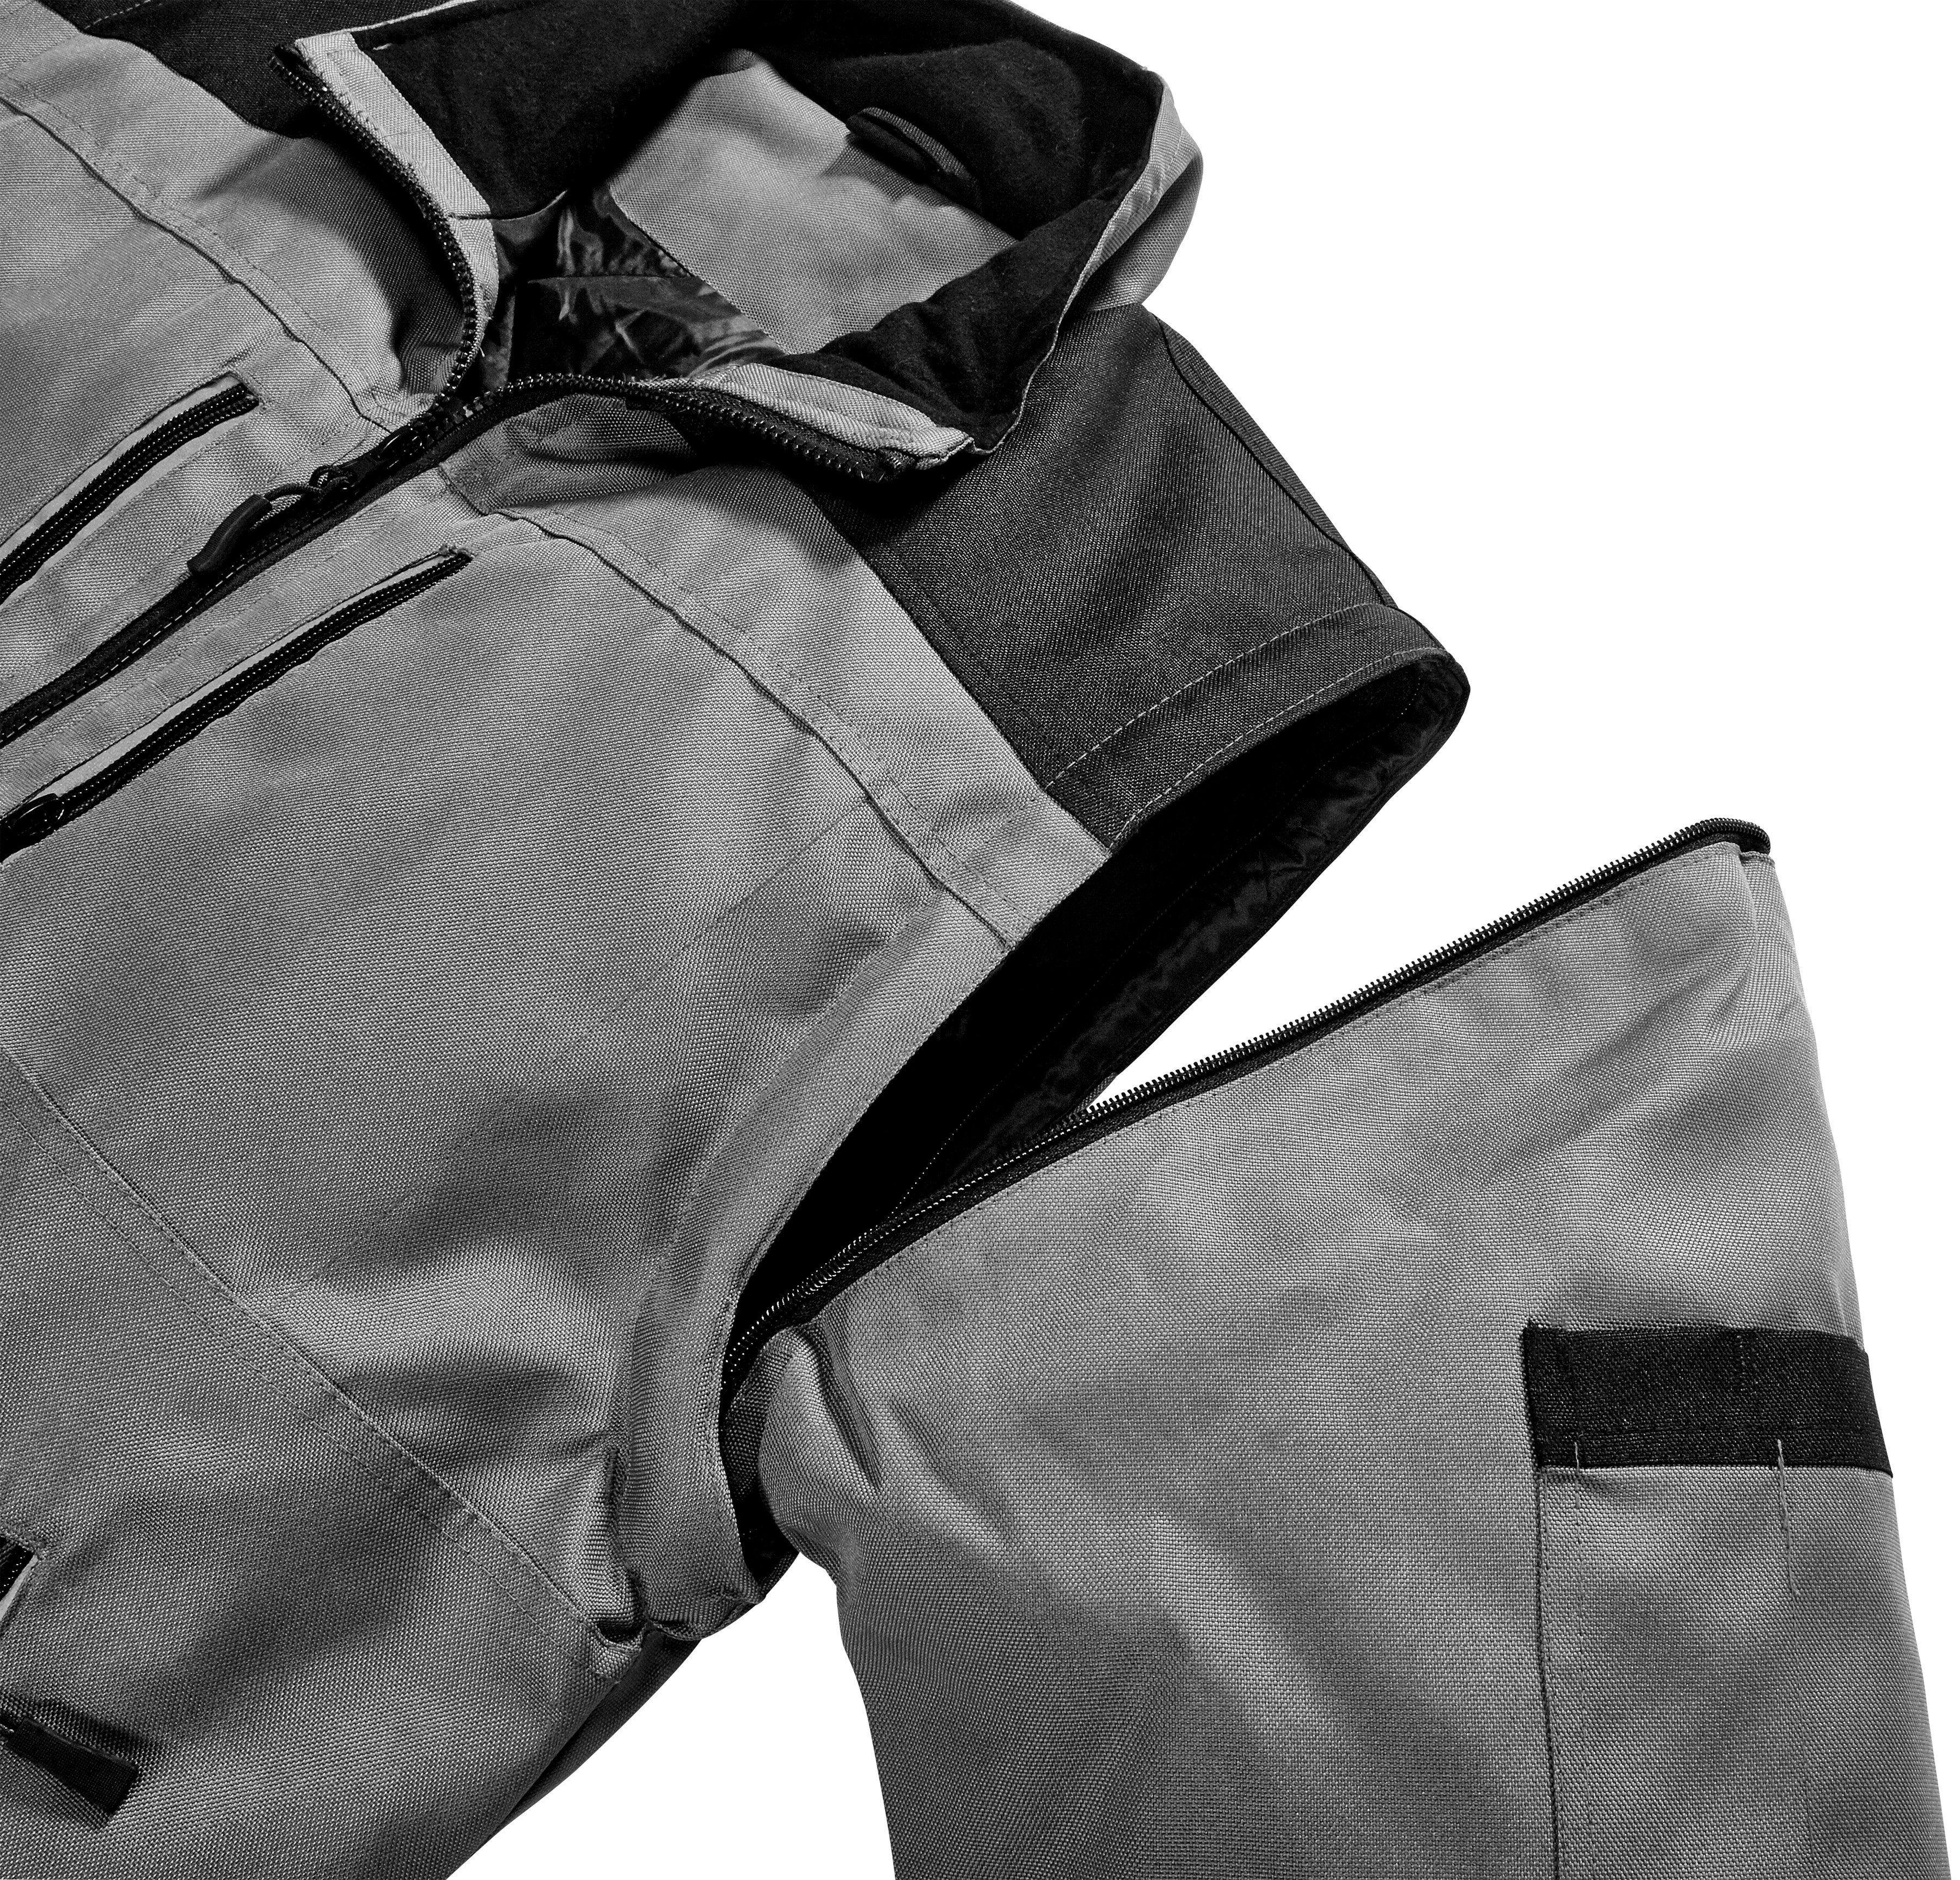 safety& more Arbeitsjacke Extreme Reflexelemente grau-schwarz